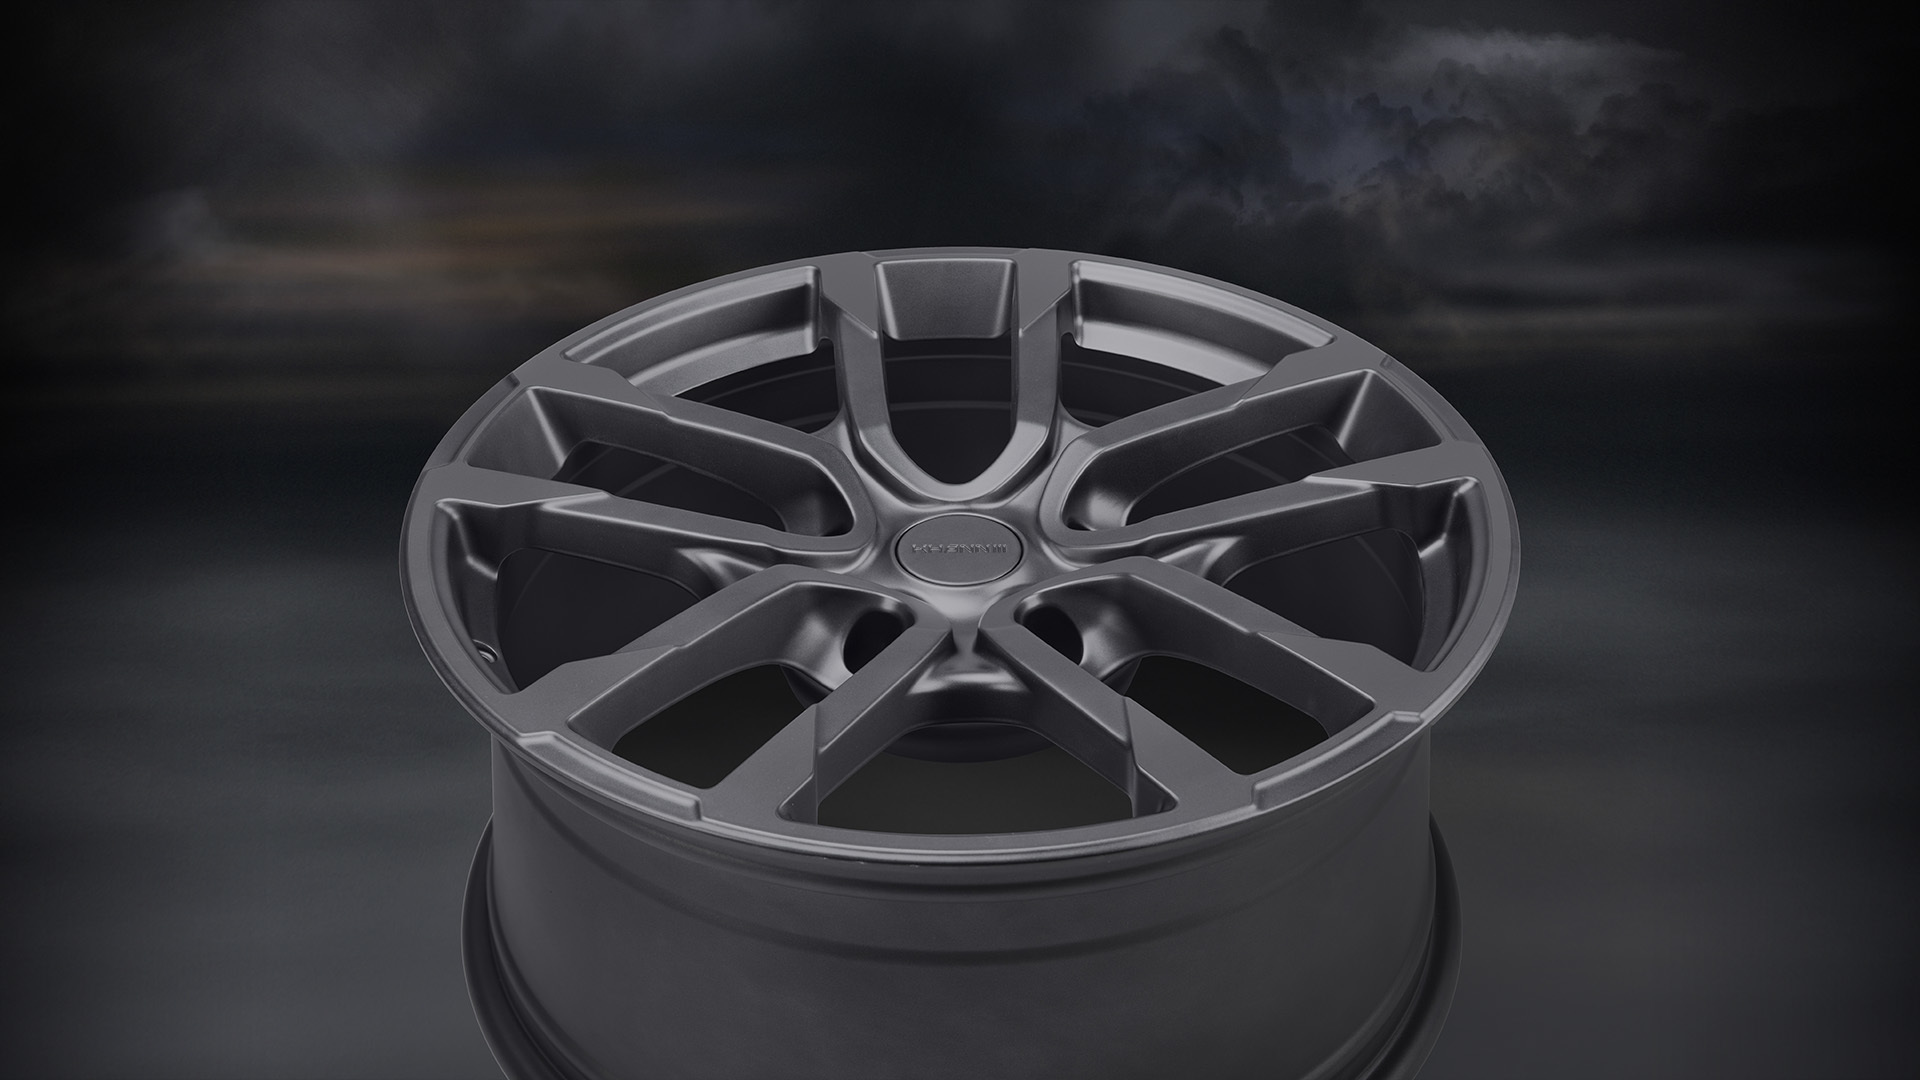 Khann DUX 8 new model forged wheels